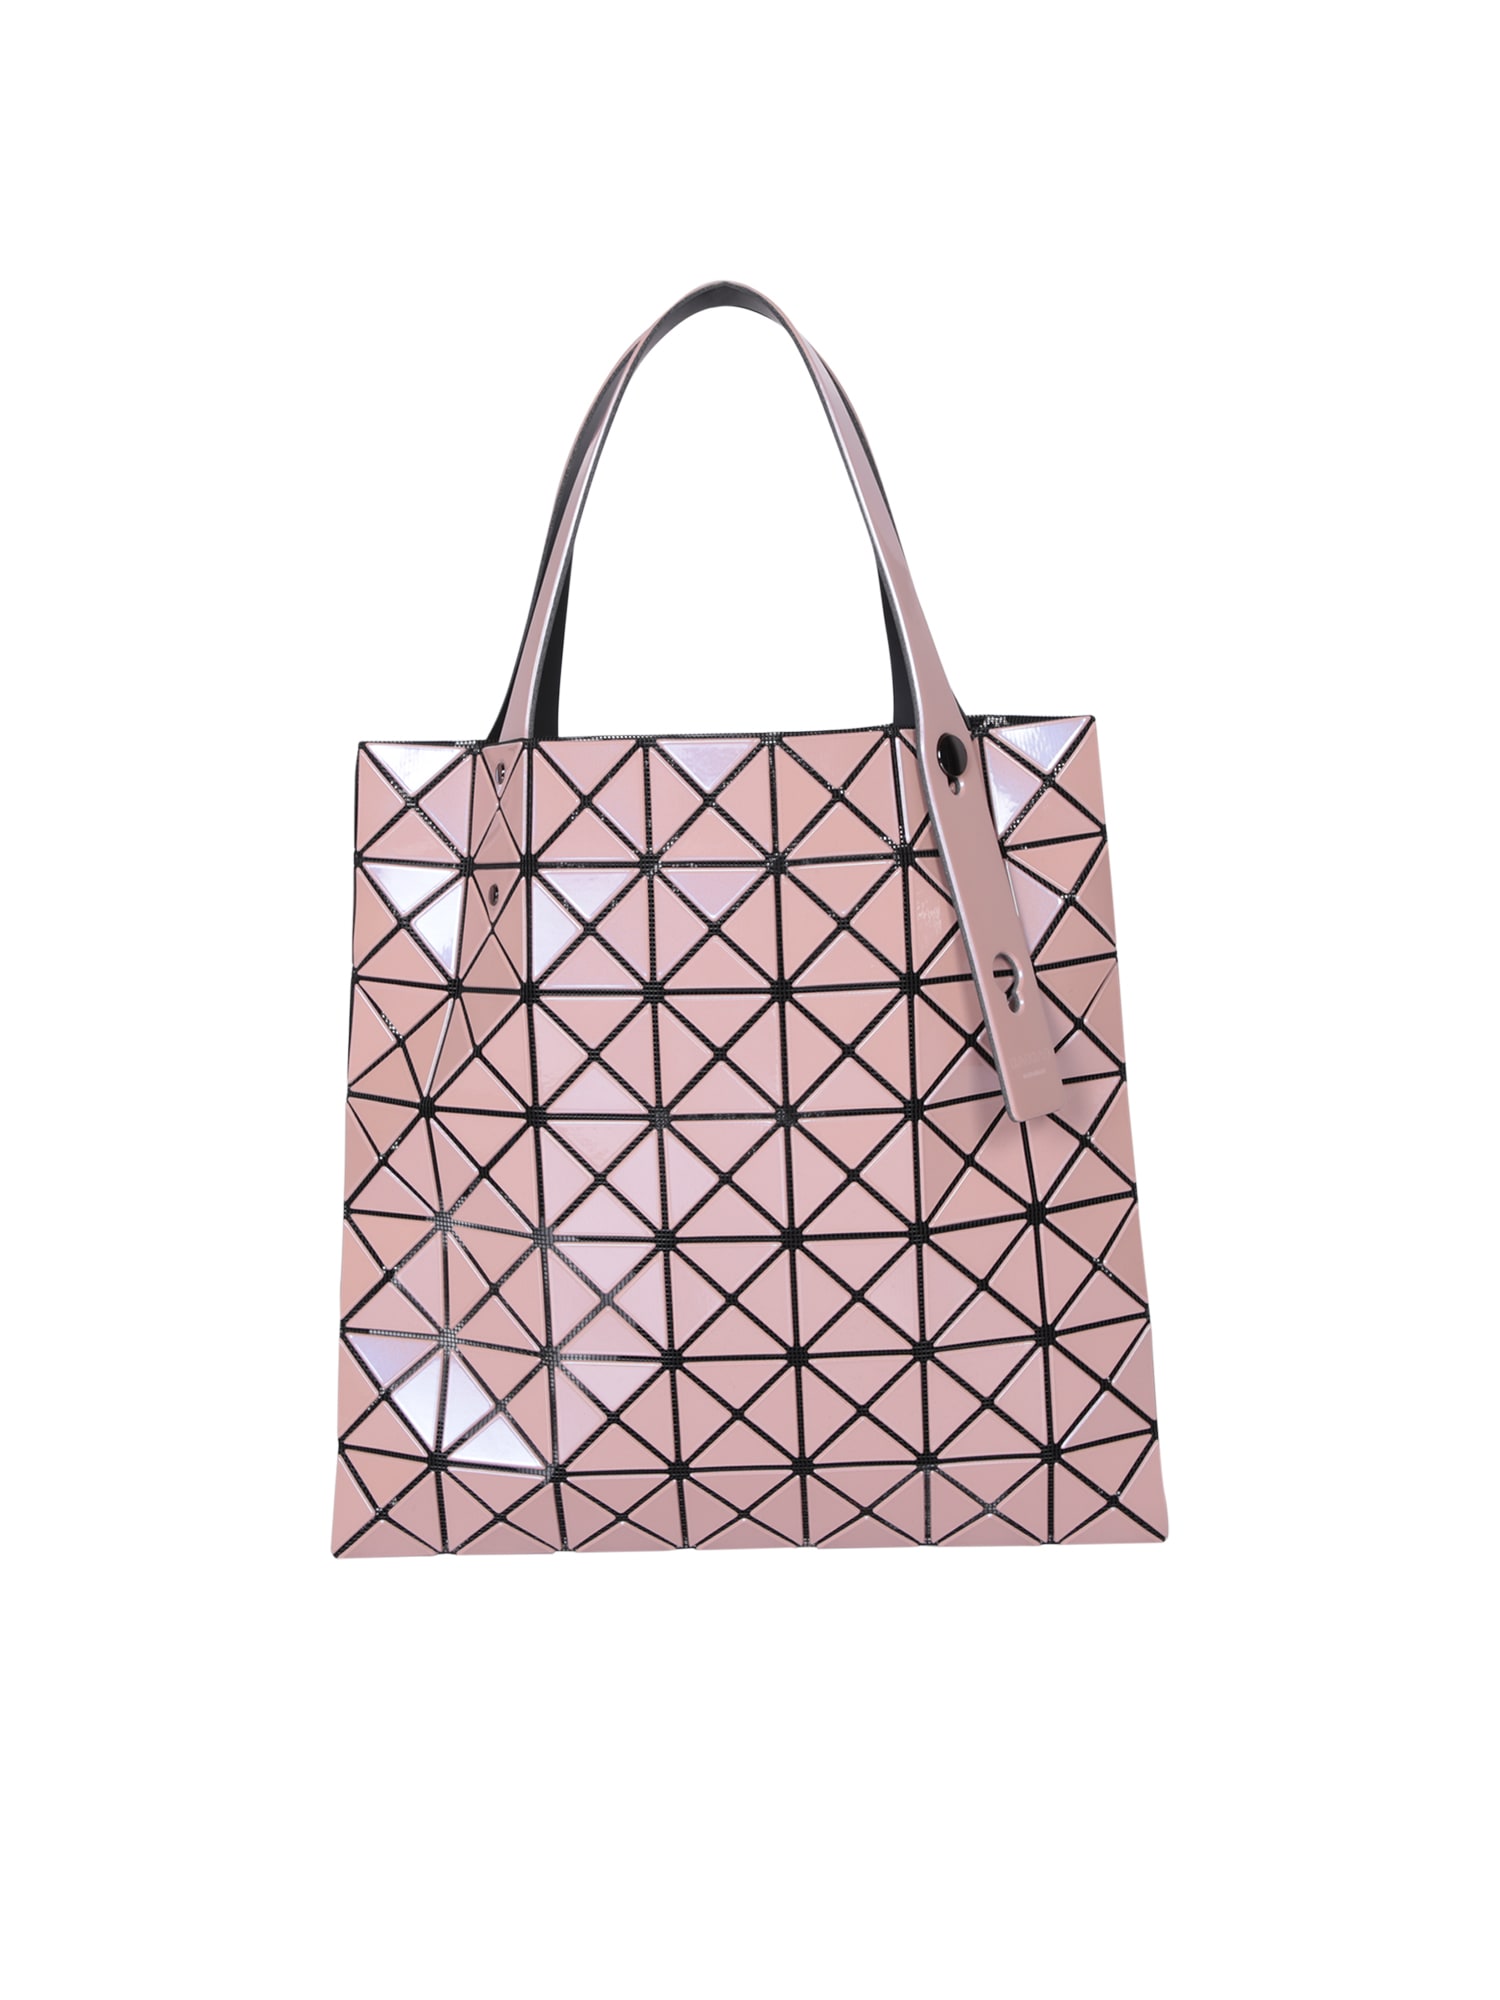 Prism Metallic Pink Bag